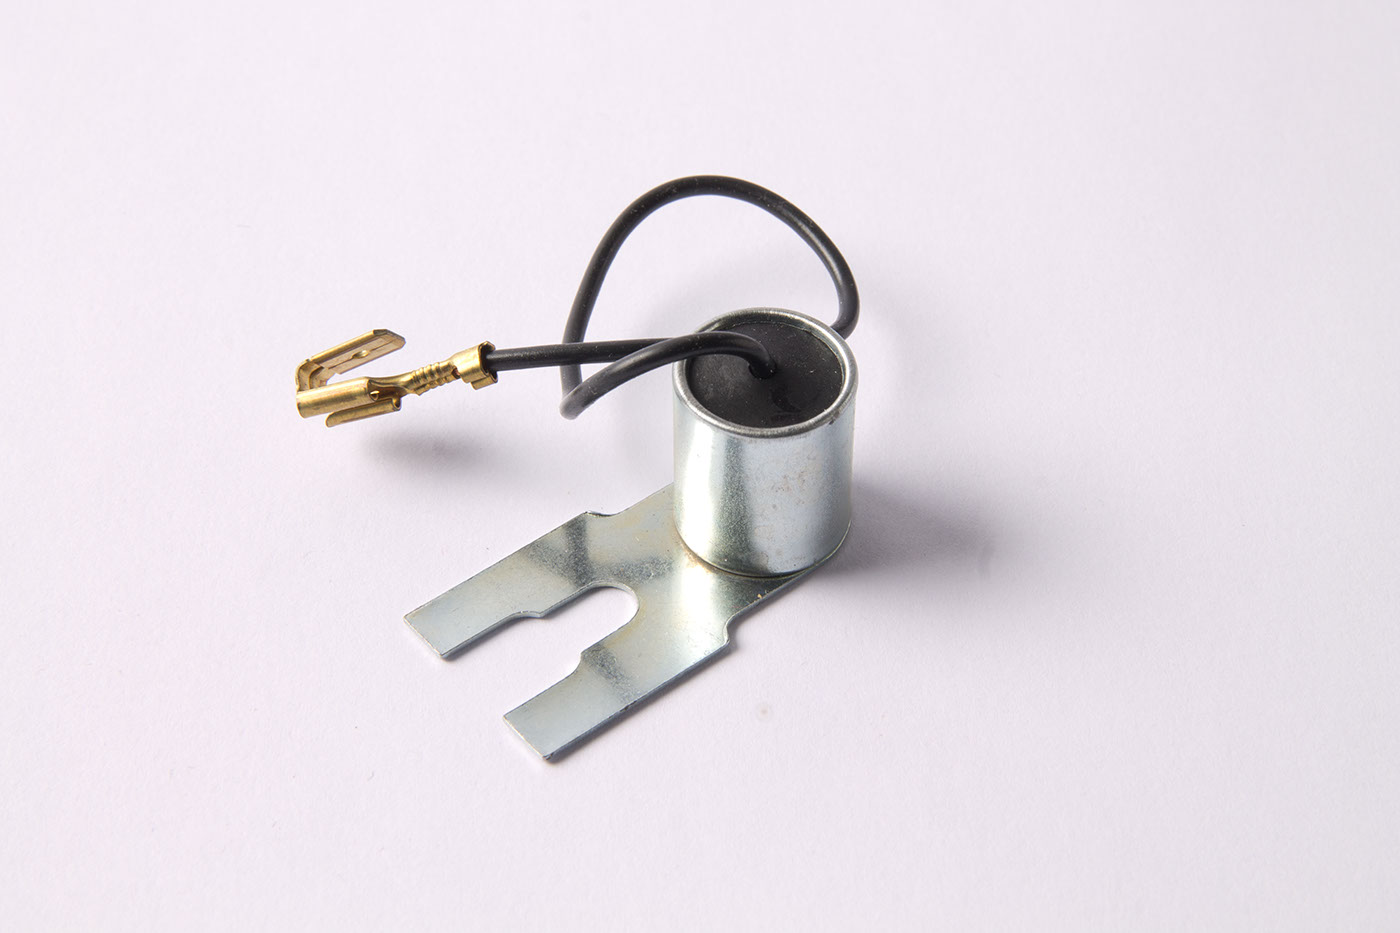 Entstörkondensator
Suppression capacitor
Condensador antipar